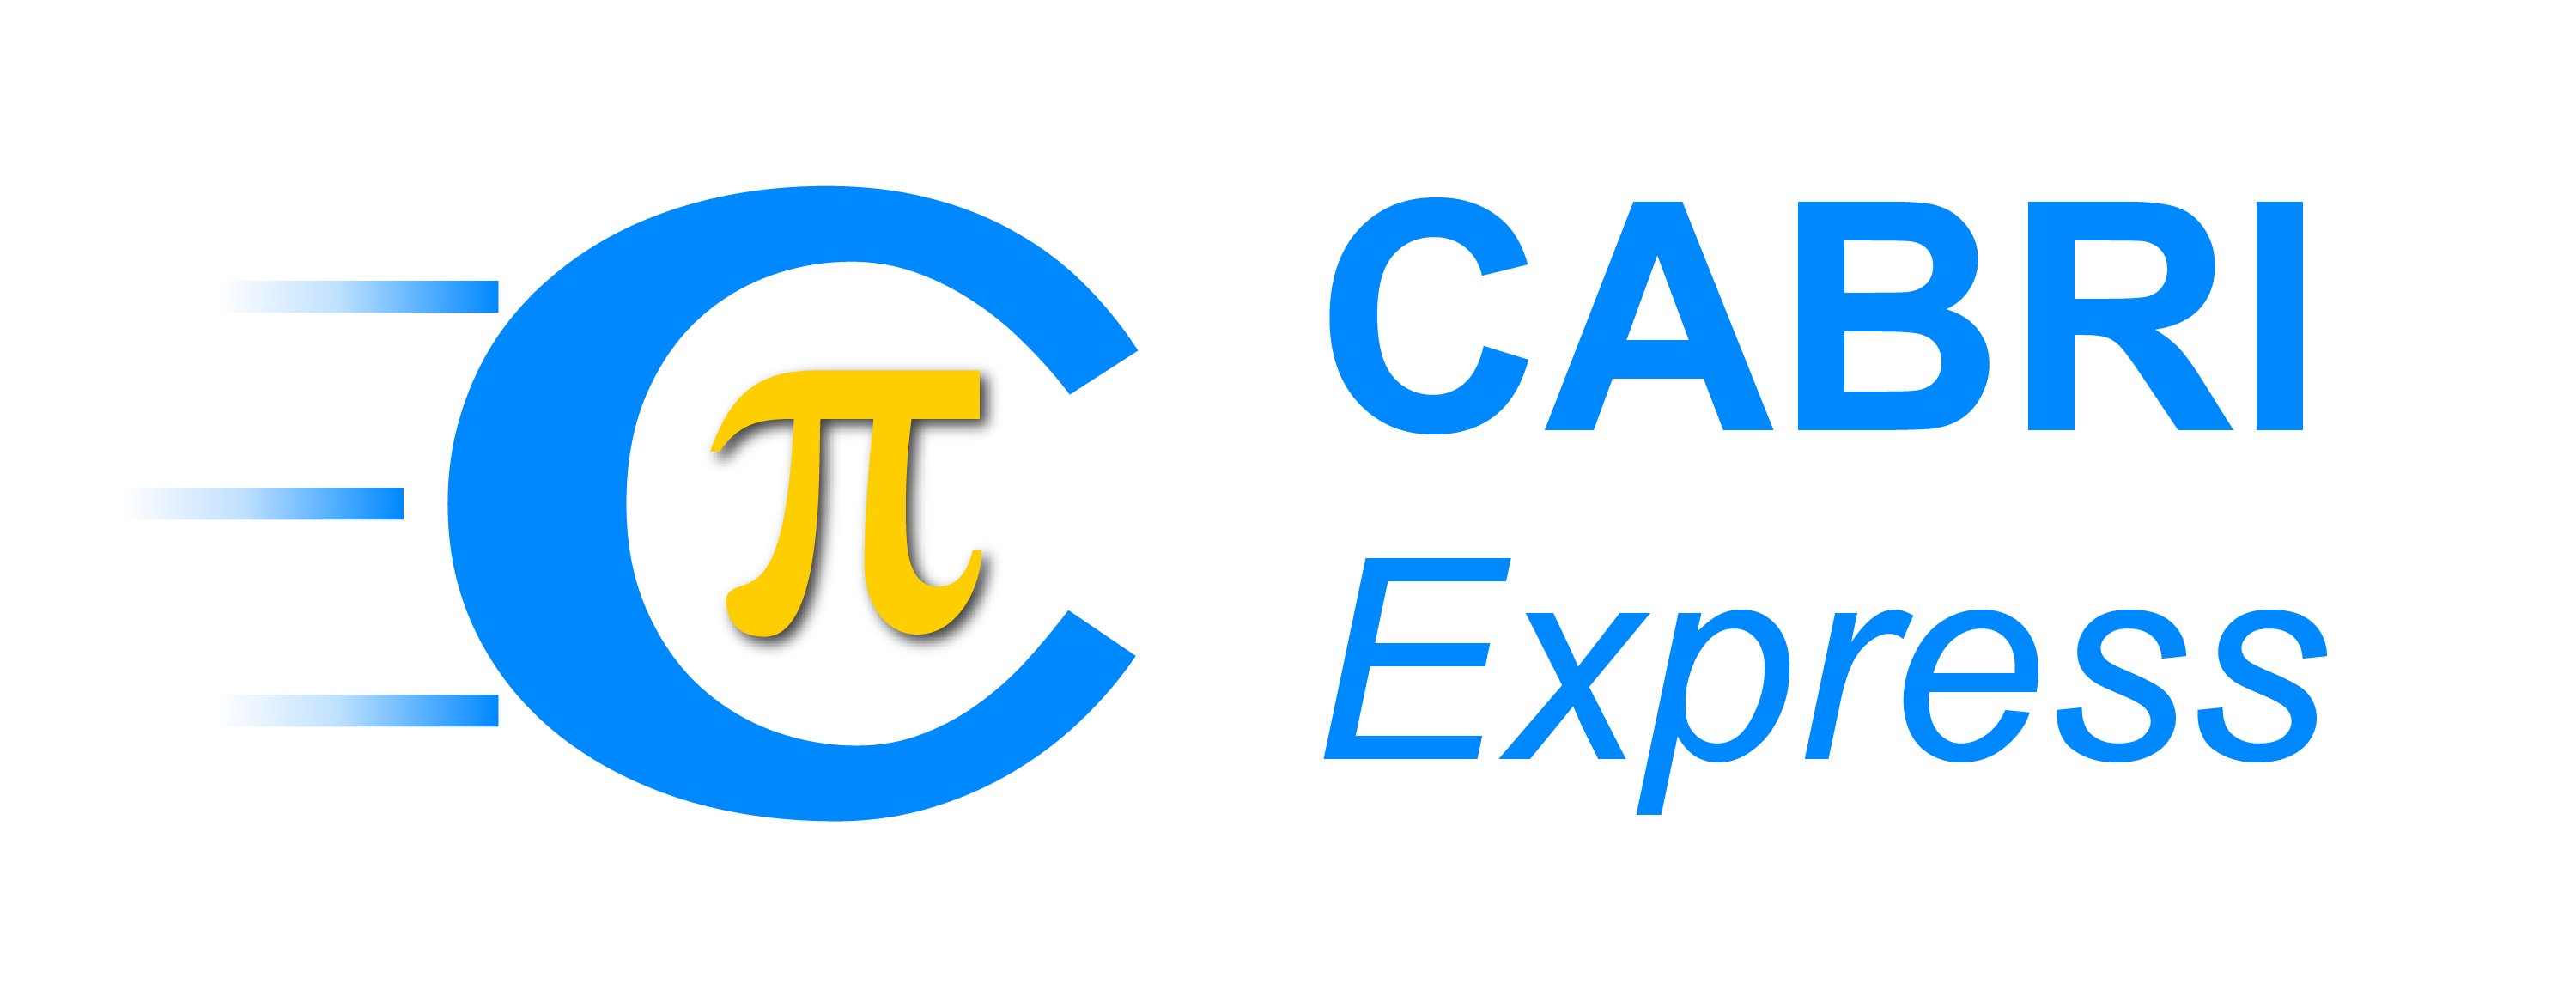 Logo Cabri Express